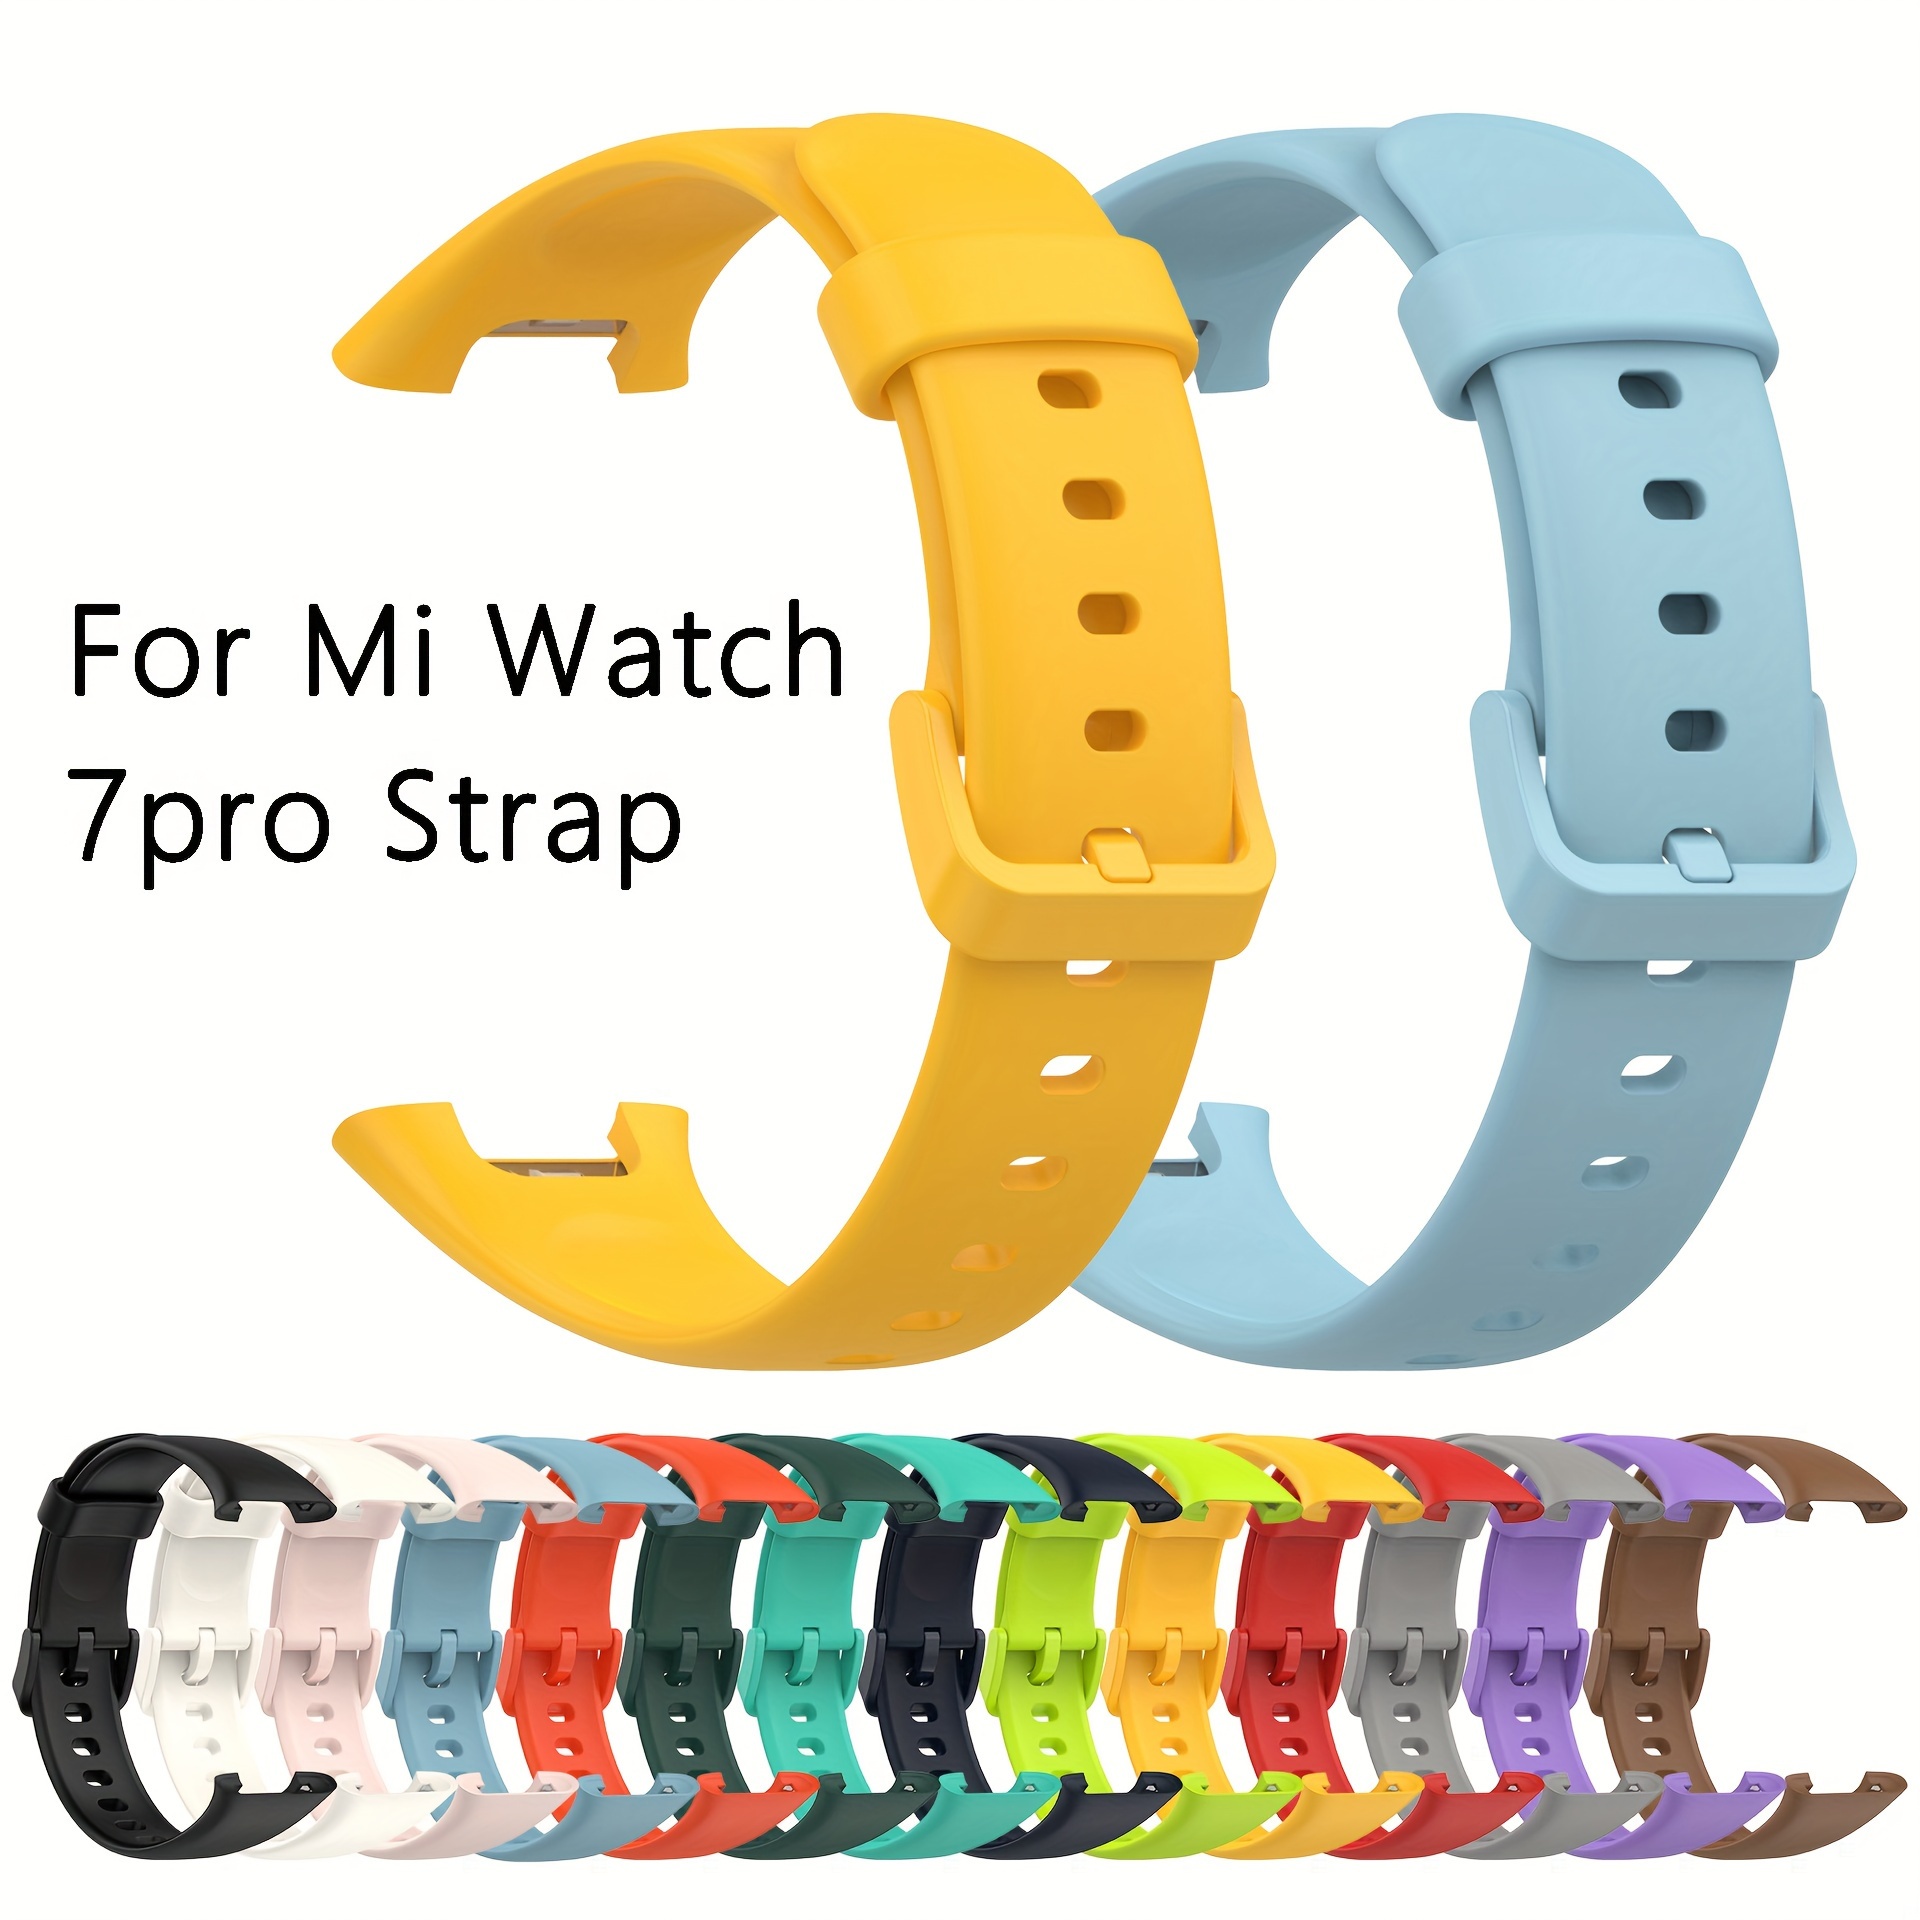 

Strap For Xiaomi Mi Band 7 Pro Sport Bracelet Watch Silicone Wrist Strap For Xiaomi Mi Band 7pro Bracelet Miband 7 Pro Strap